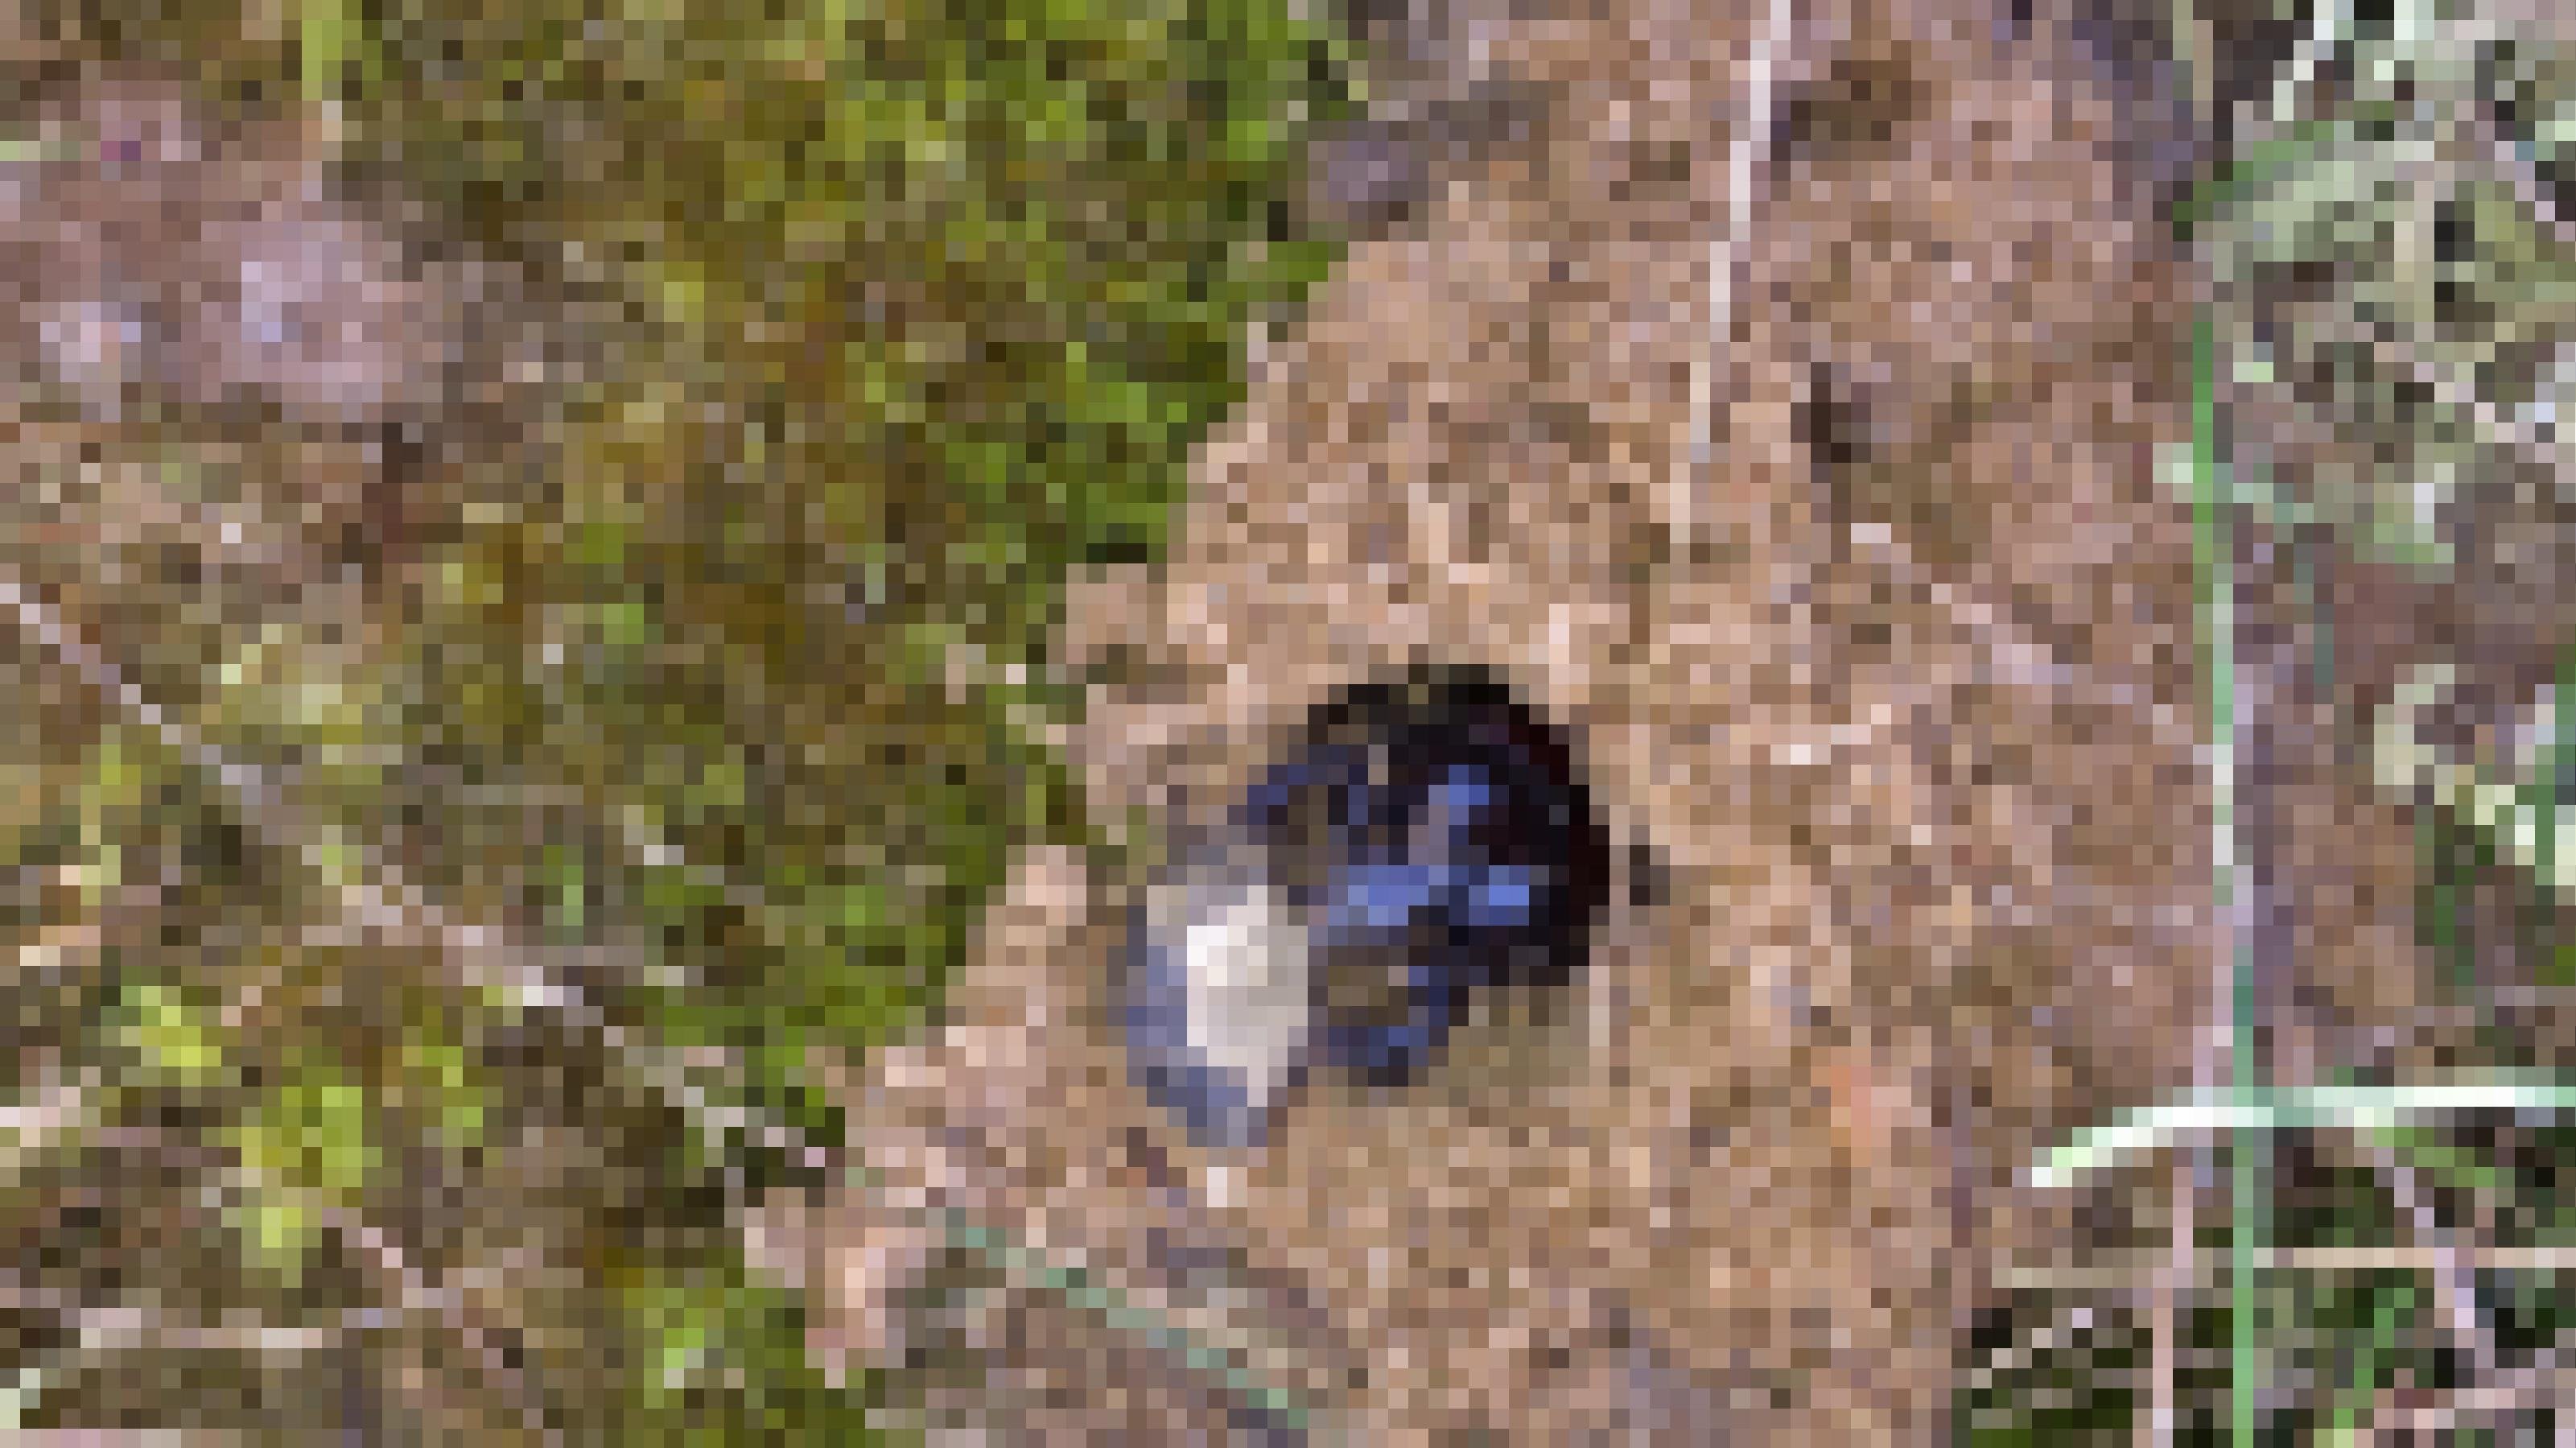 Ein schwarz-brauner Käfer schaut aus einem Sandloch heraus, das von Gräsern und Moosen umgeben ist.